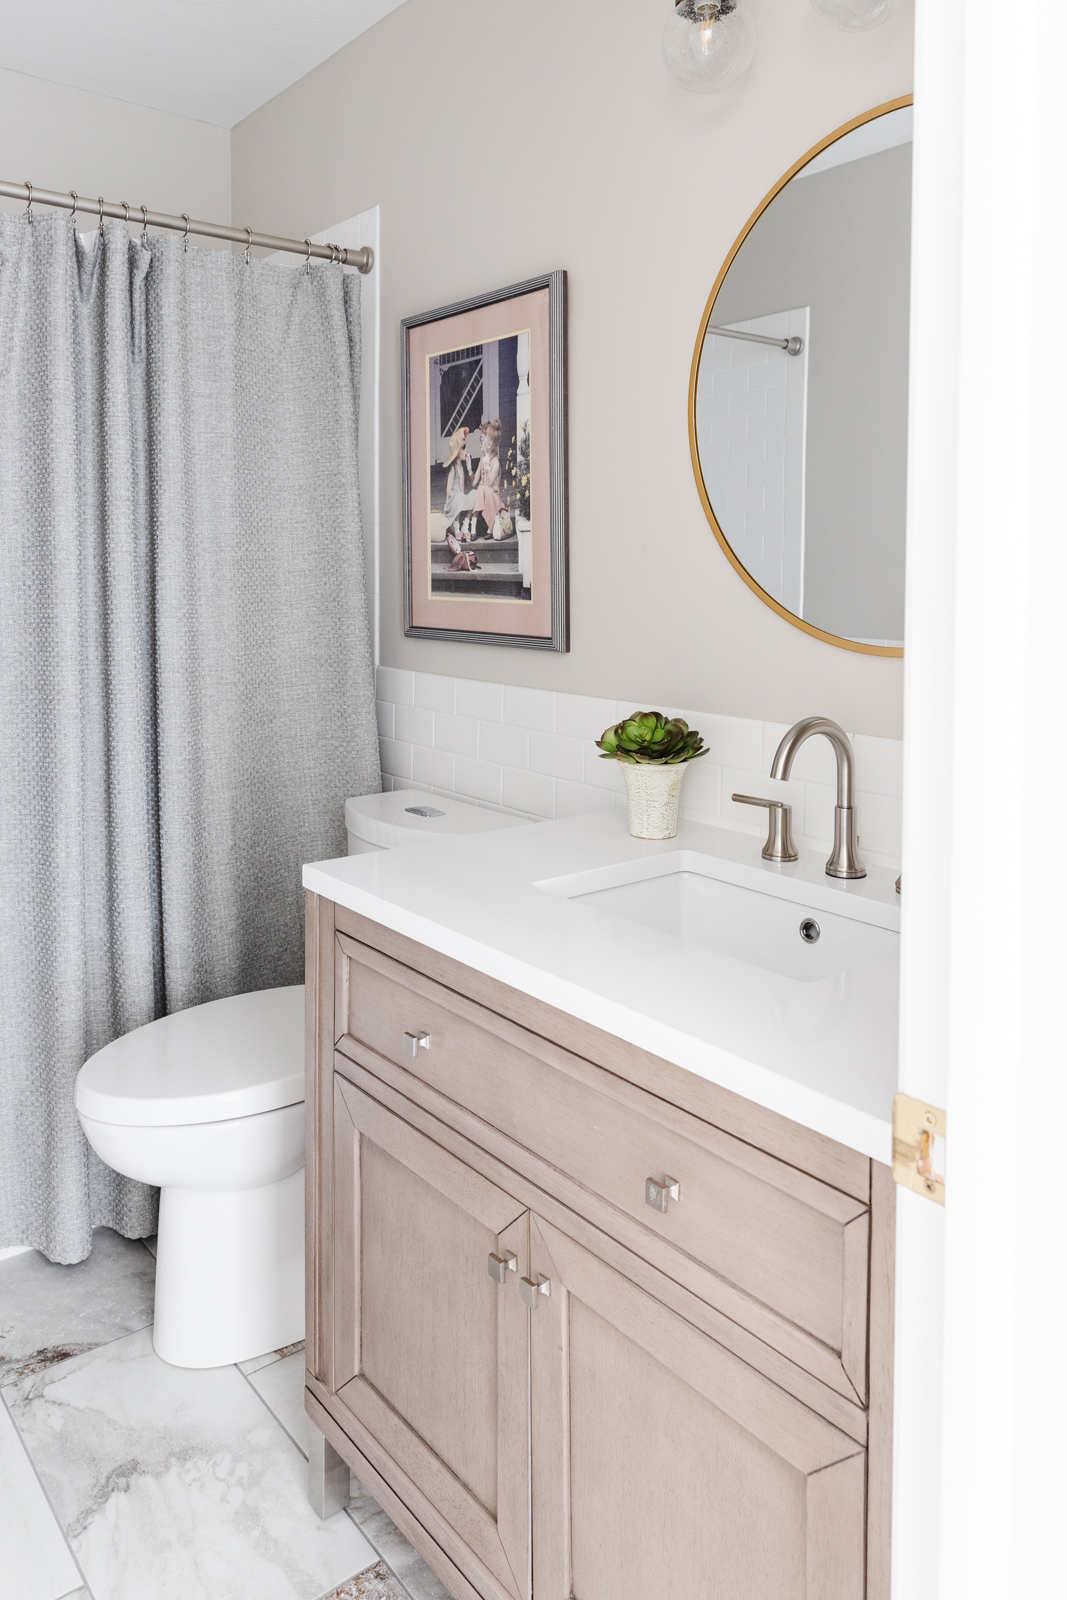 Forest Lake Remodel Guest Bedroom Bathroom Vanity Mirror